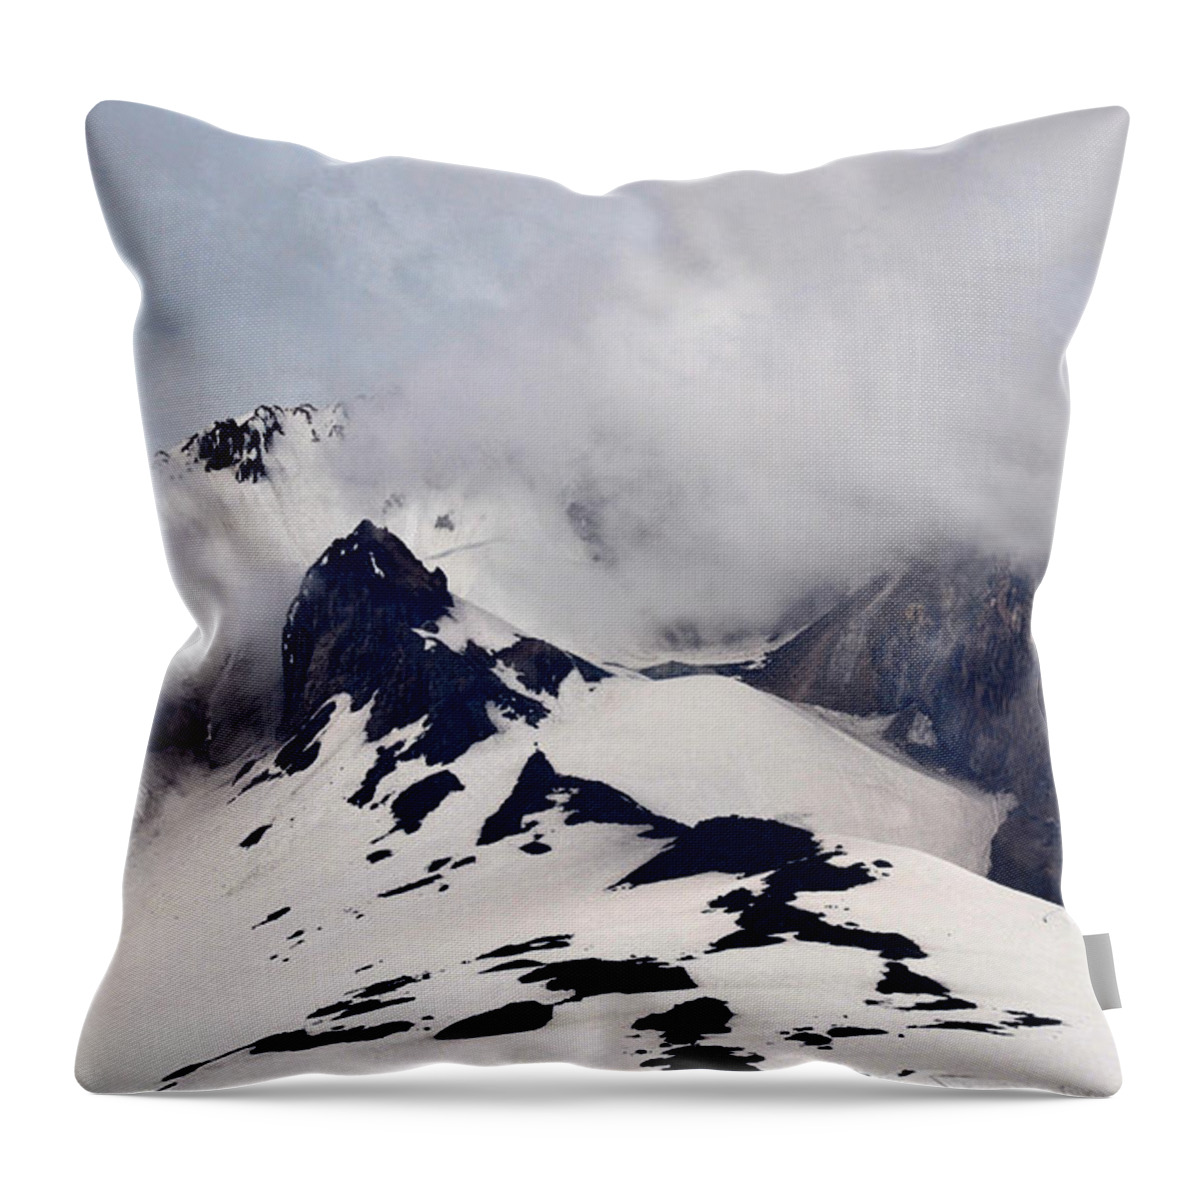 Mt. Hood Throw Pillow featuring the photograph Mt. Hood by Matt Hanson